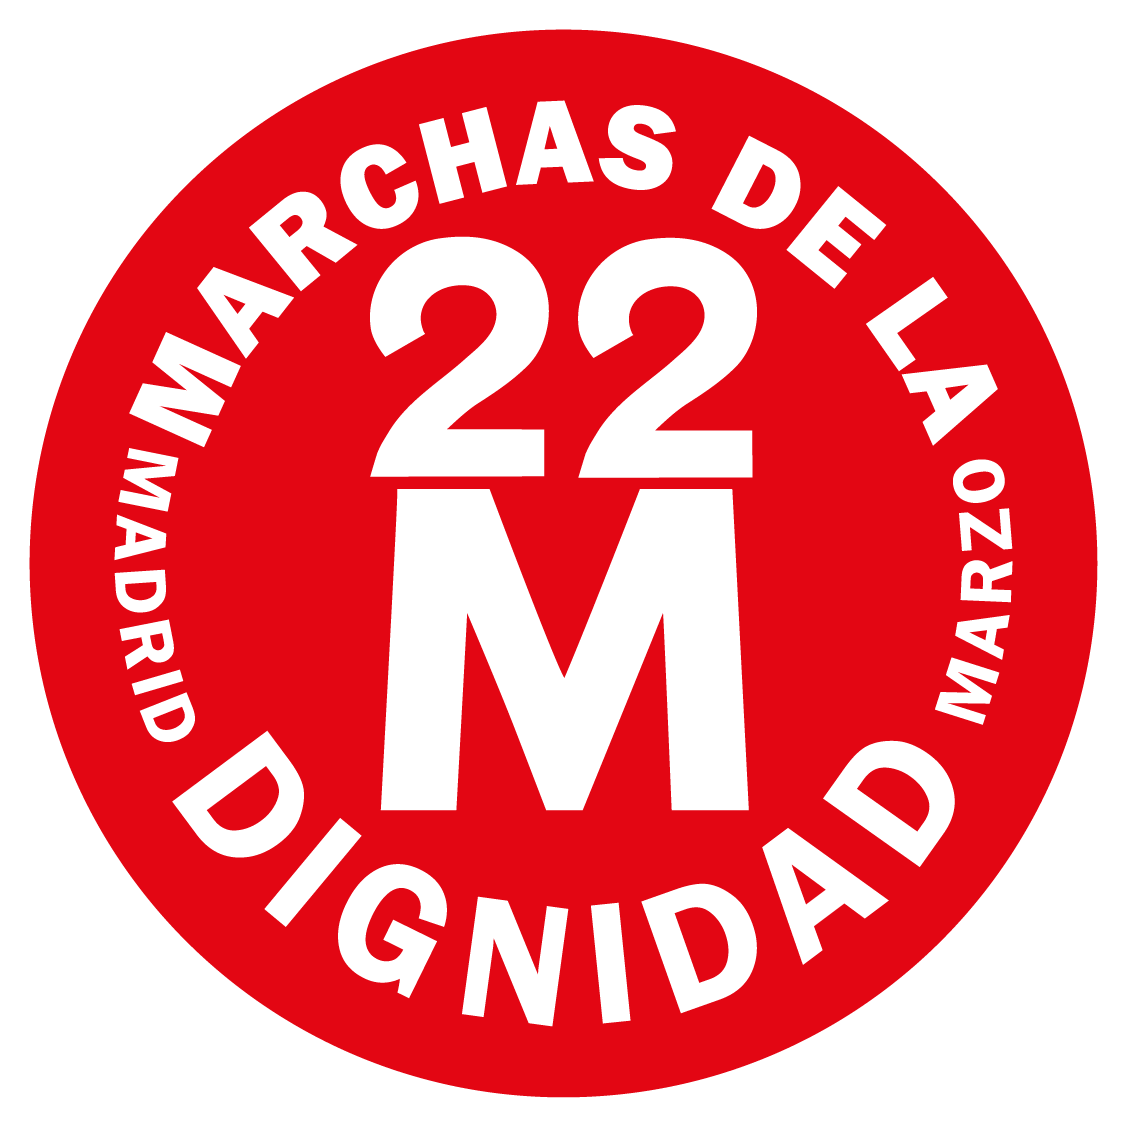 La Junta Municipal de Tetuán niega espacios a las Marchas de la Dignidad 22M